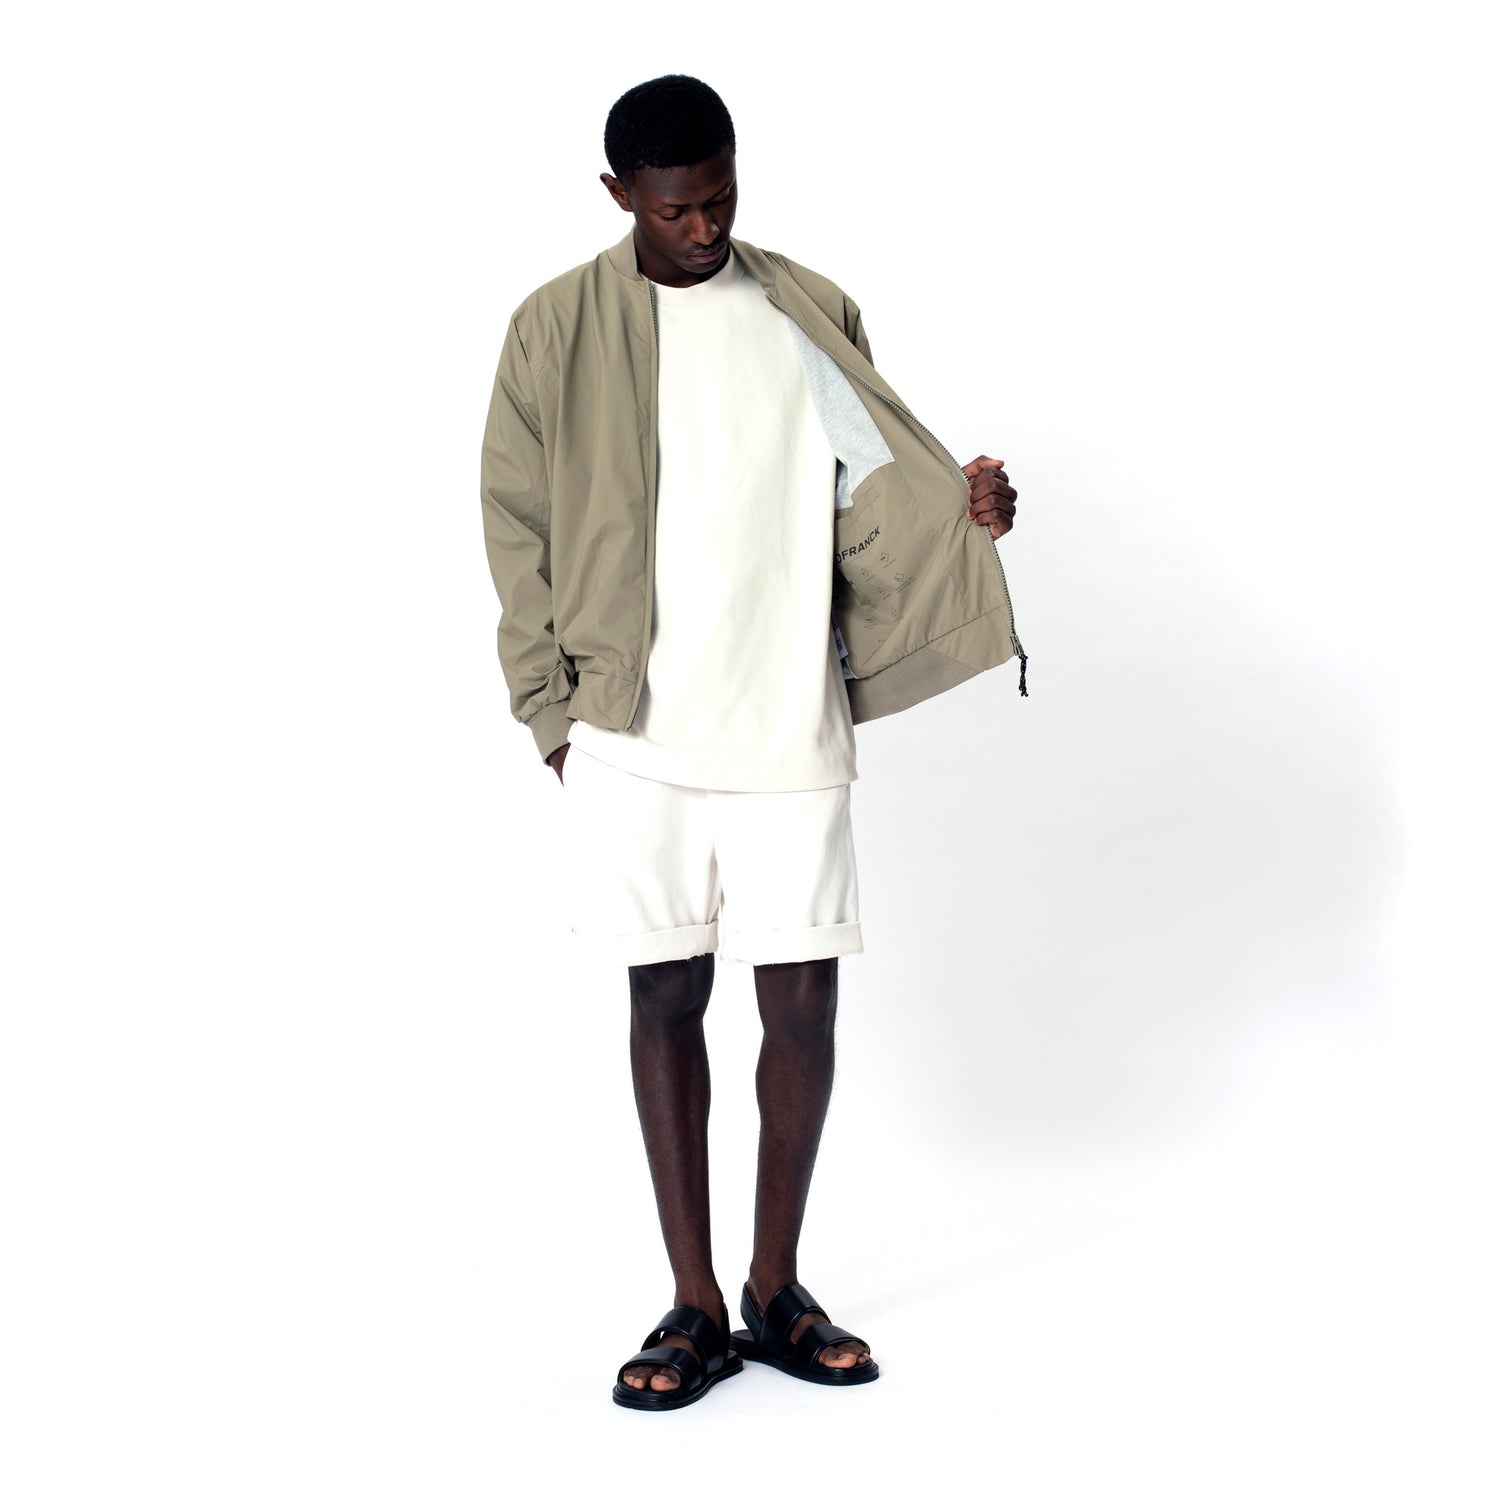 GOFRANCK-MILD-Product-Image-men-rainjacket